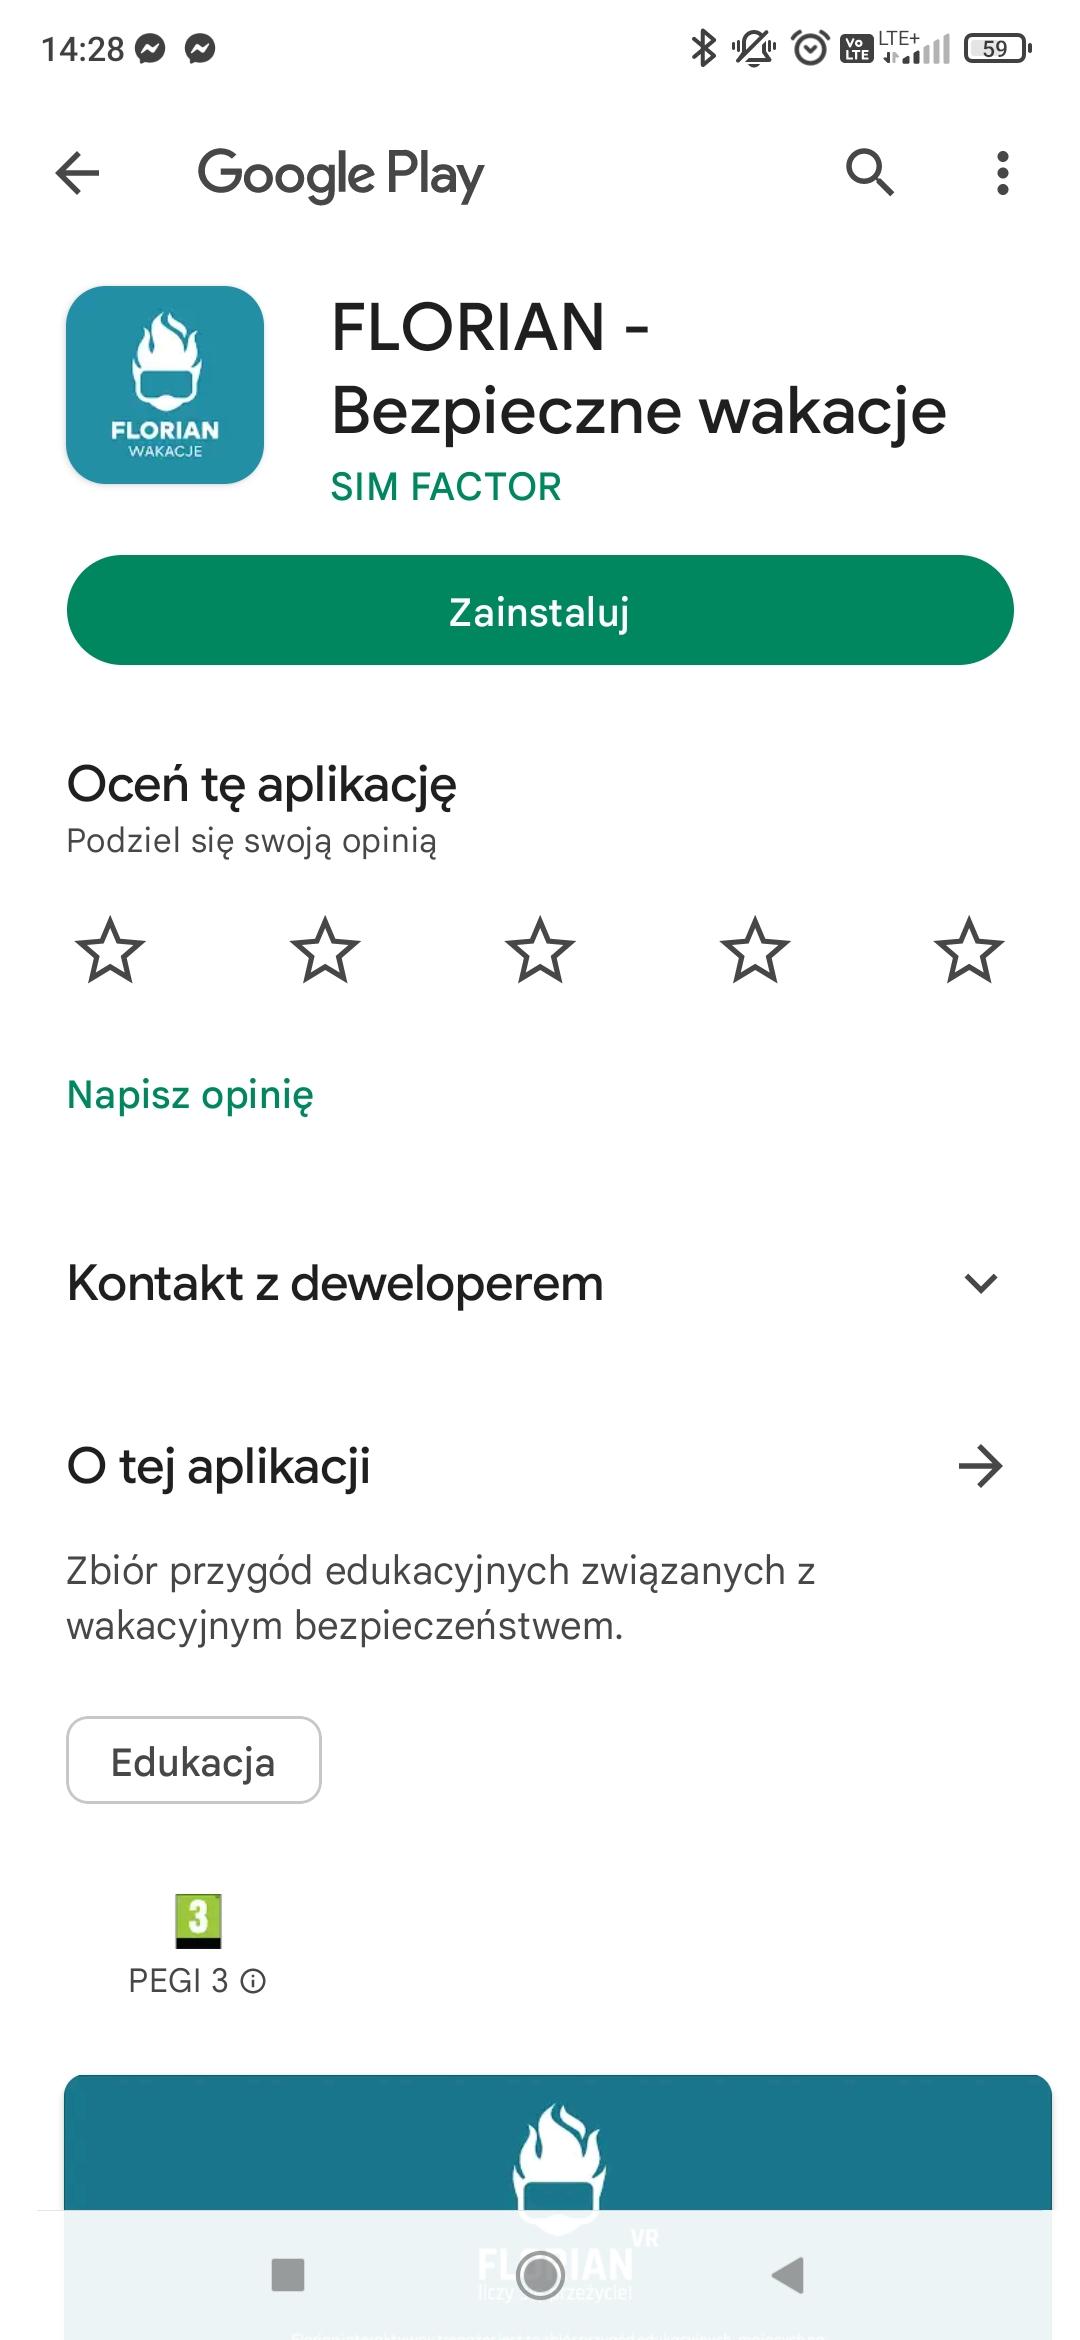 Widok aplikacji Florian w sklepie Google Play